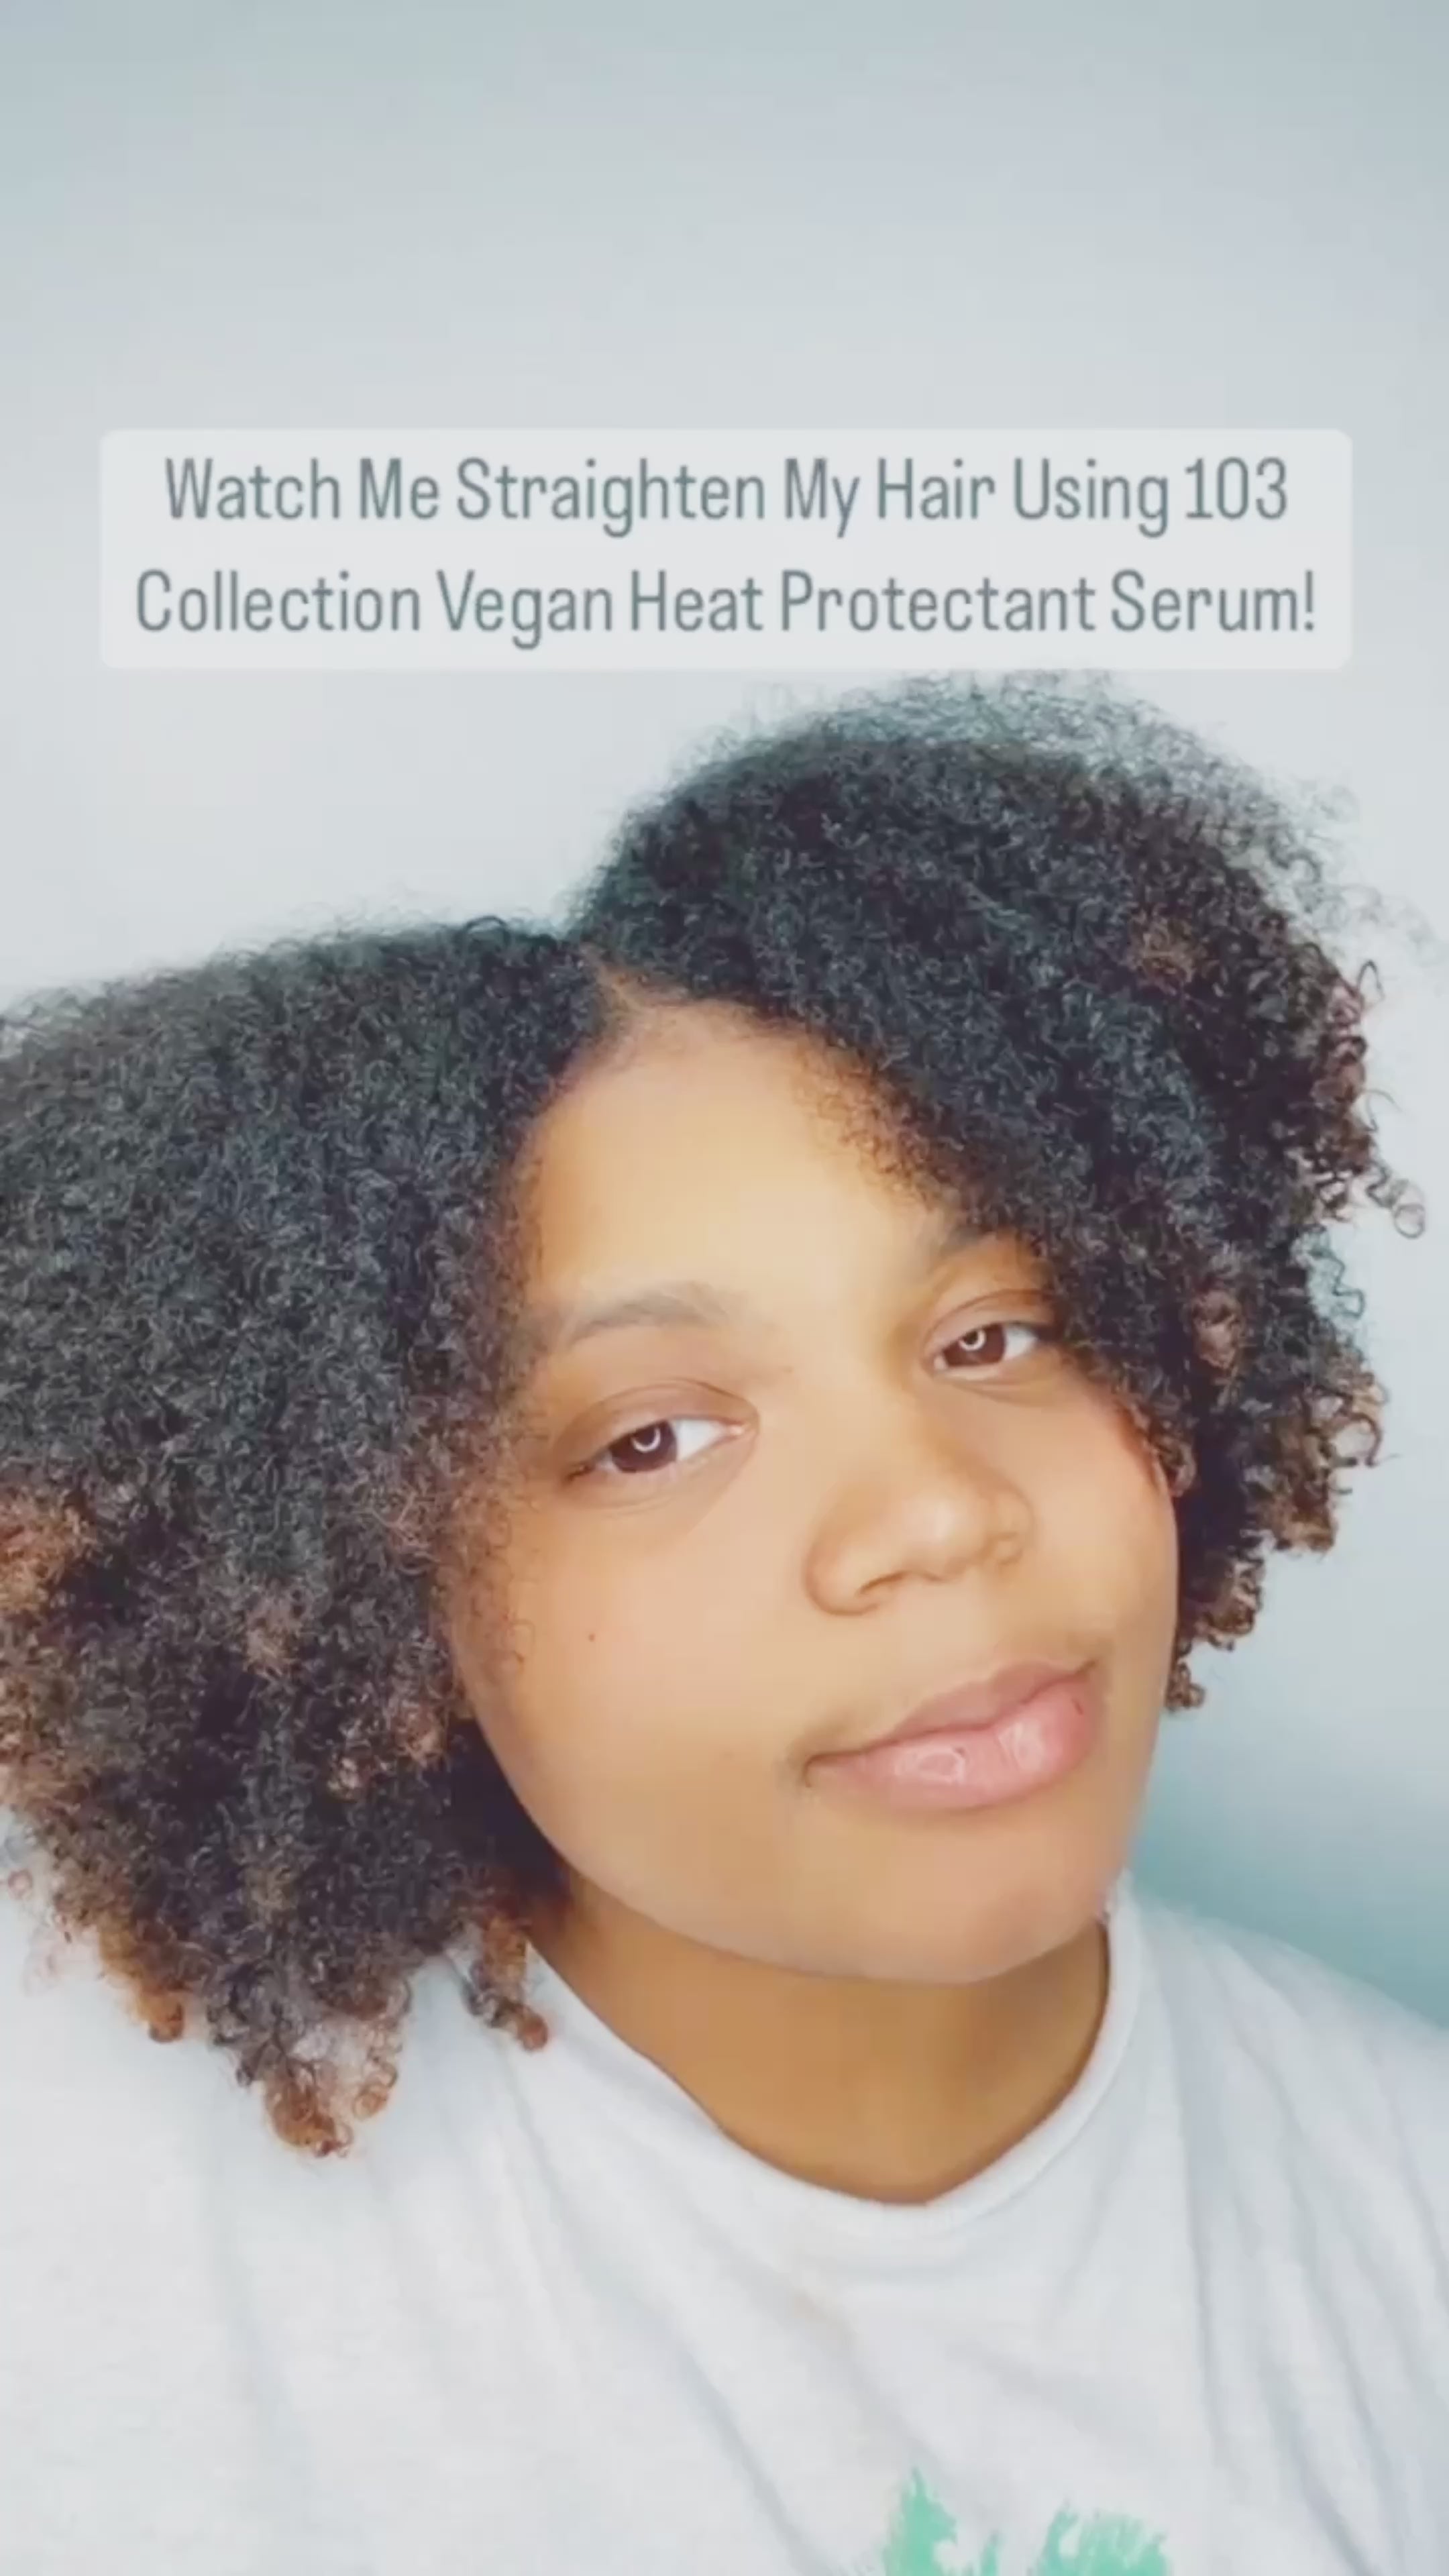 Vegan Heat Protectant Serum